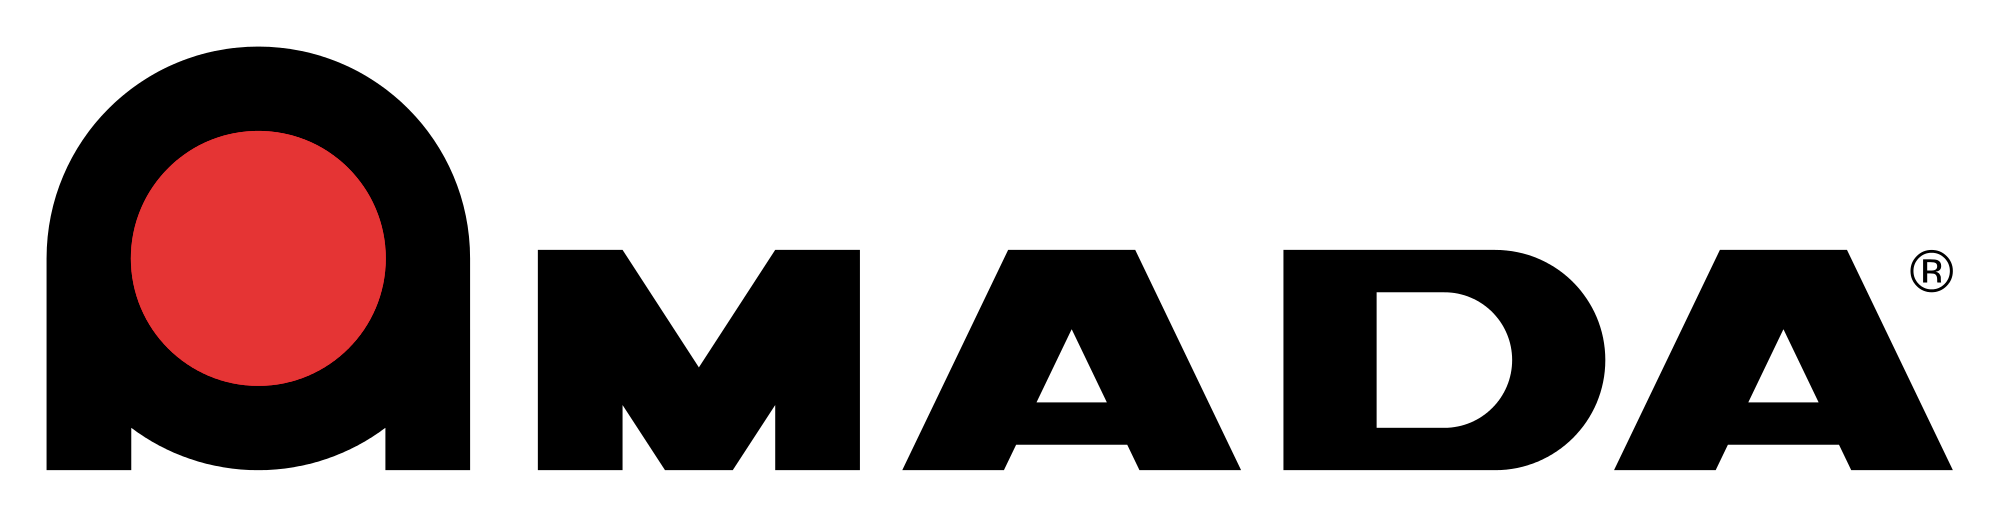 Amada Logo - Amada.svg